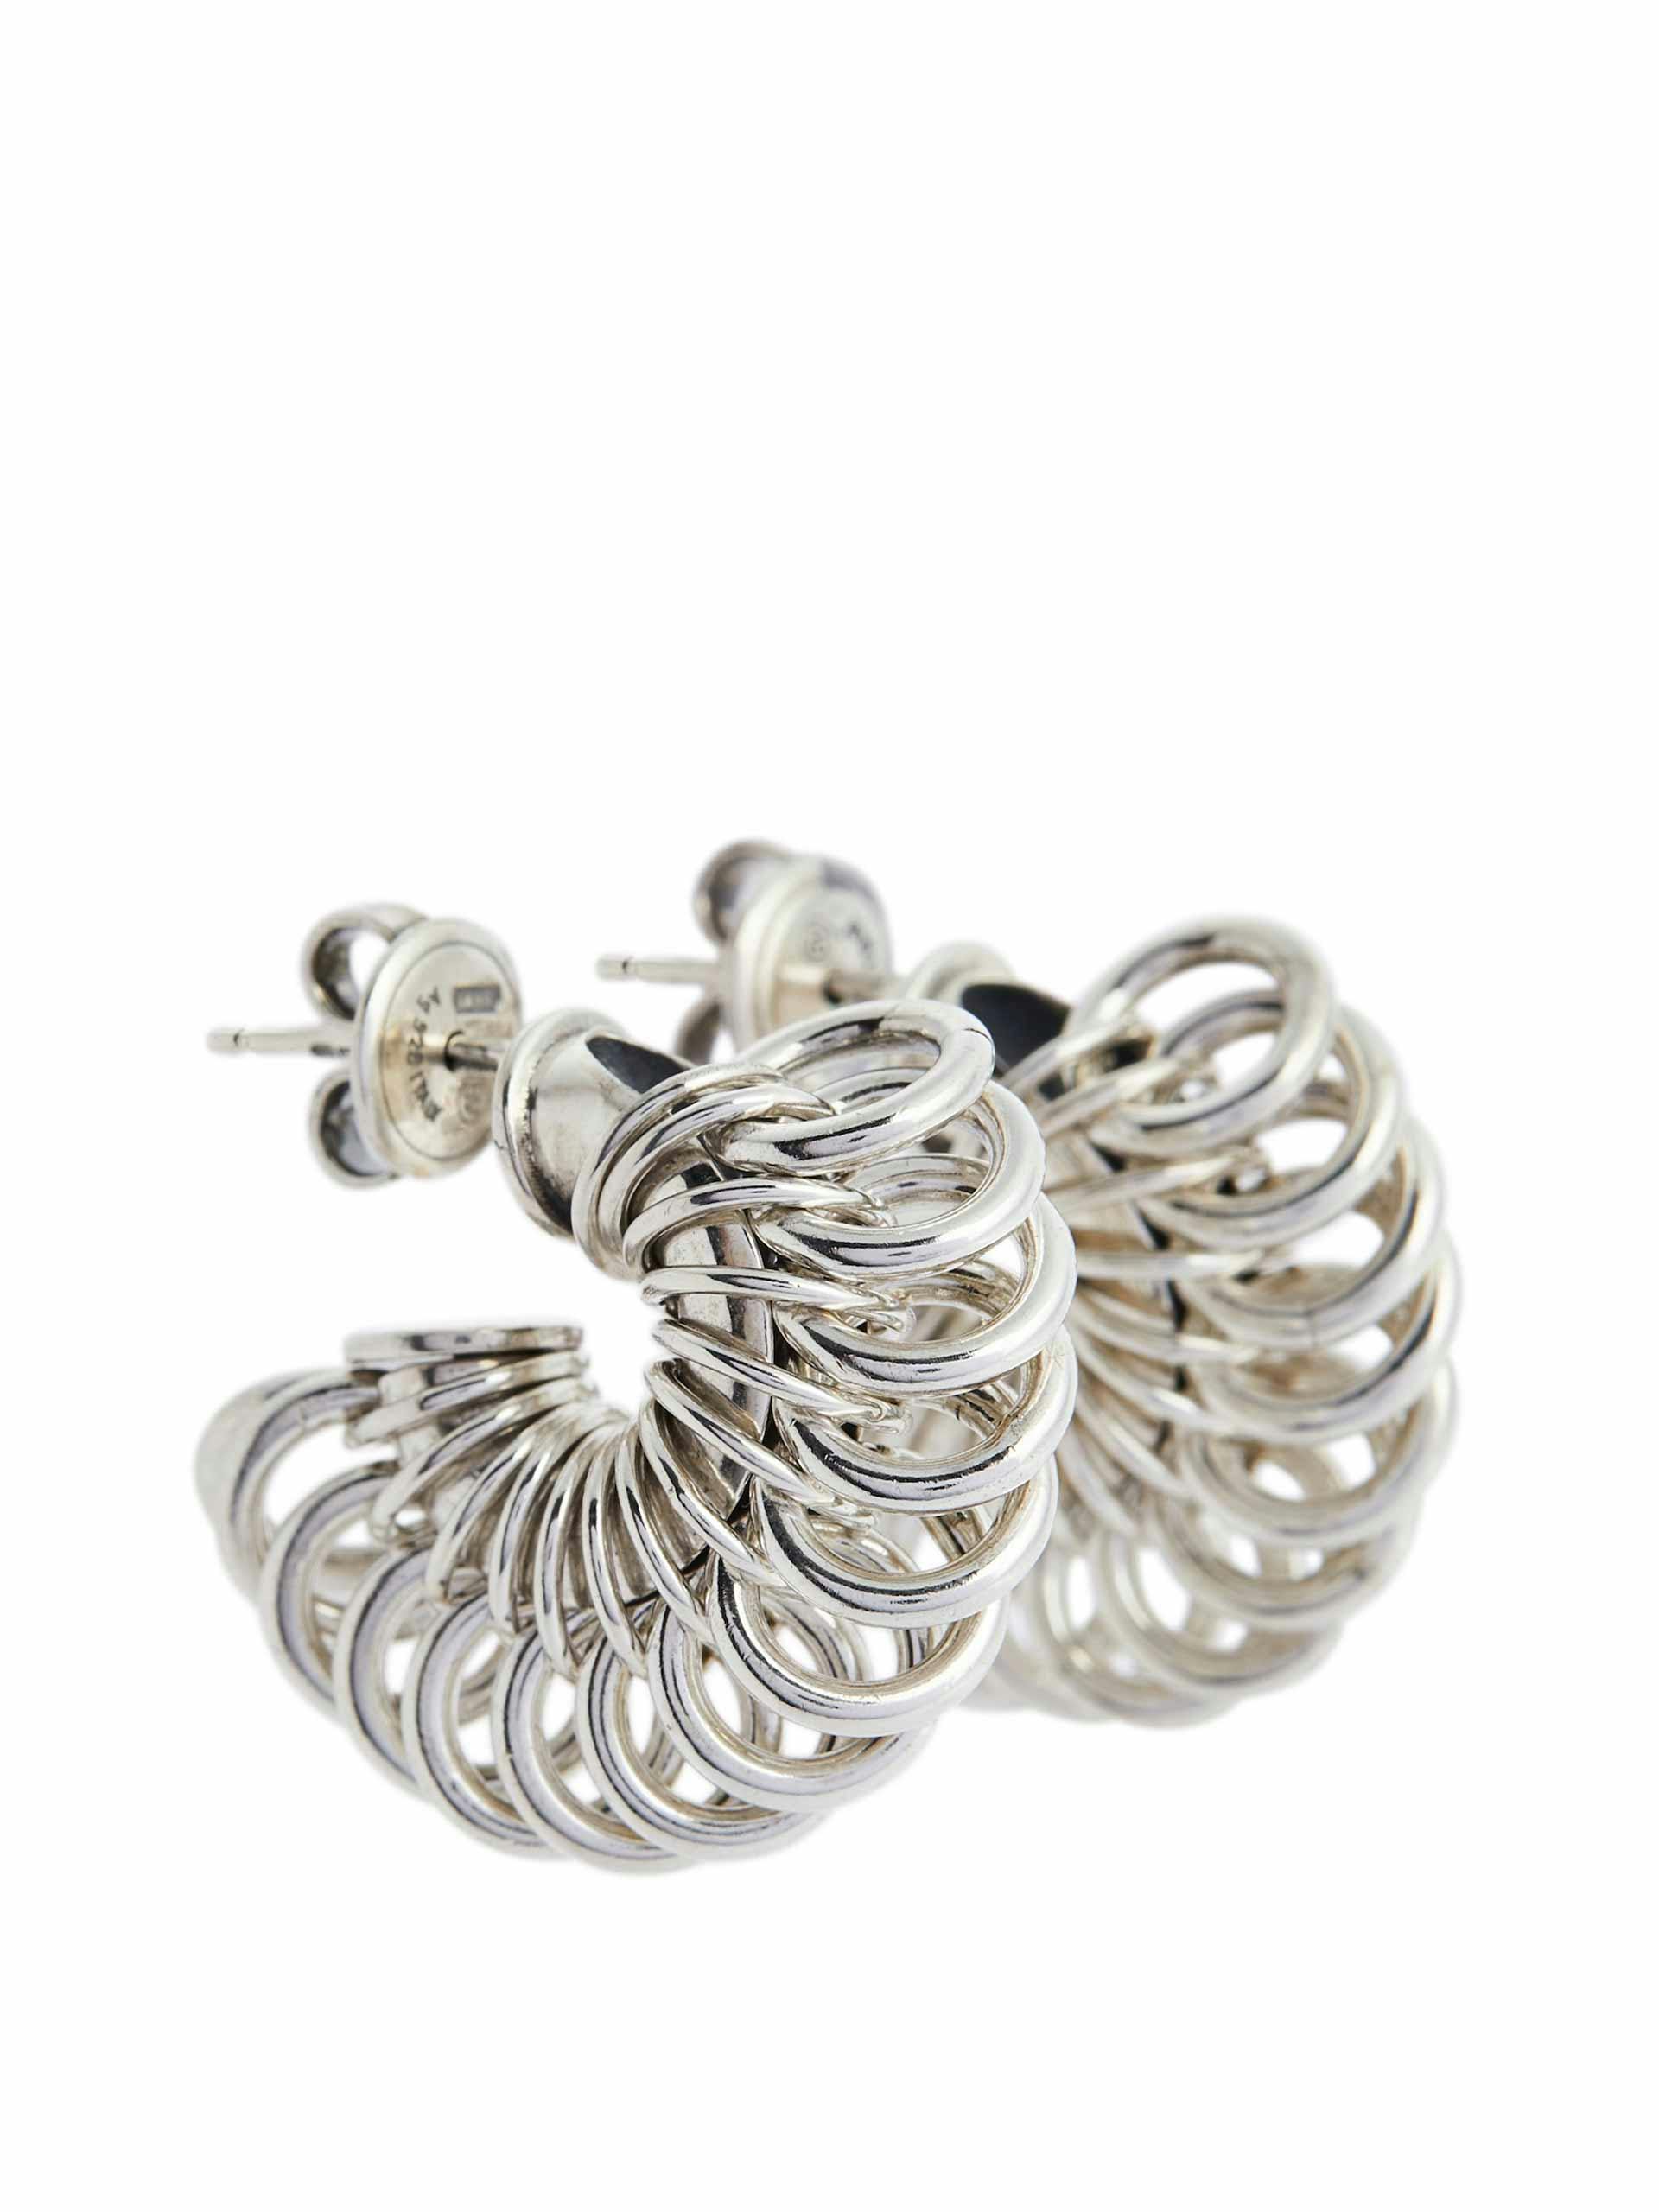 Silver ring earrings